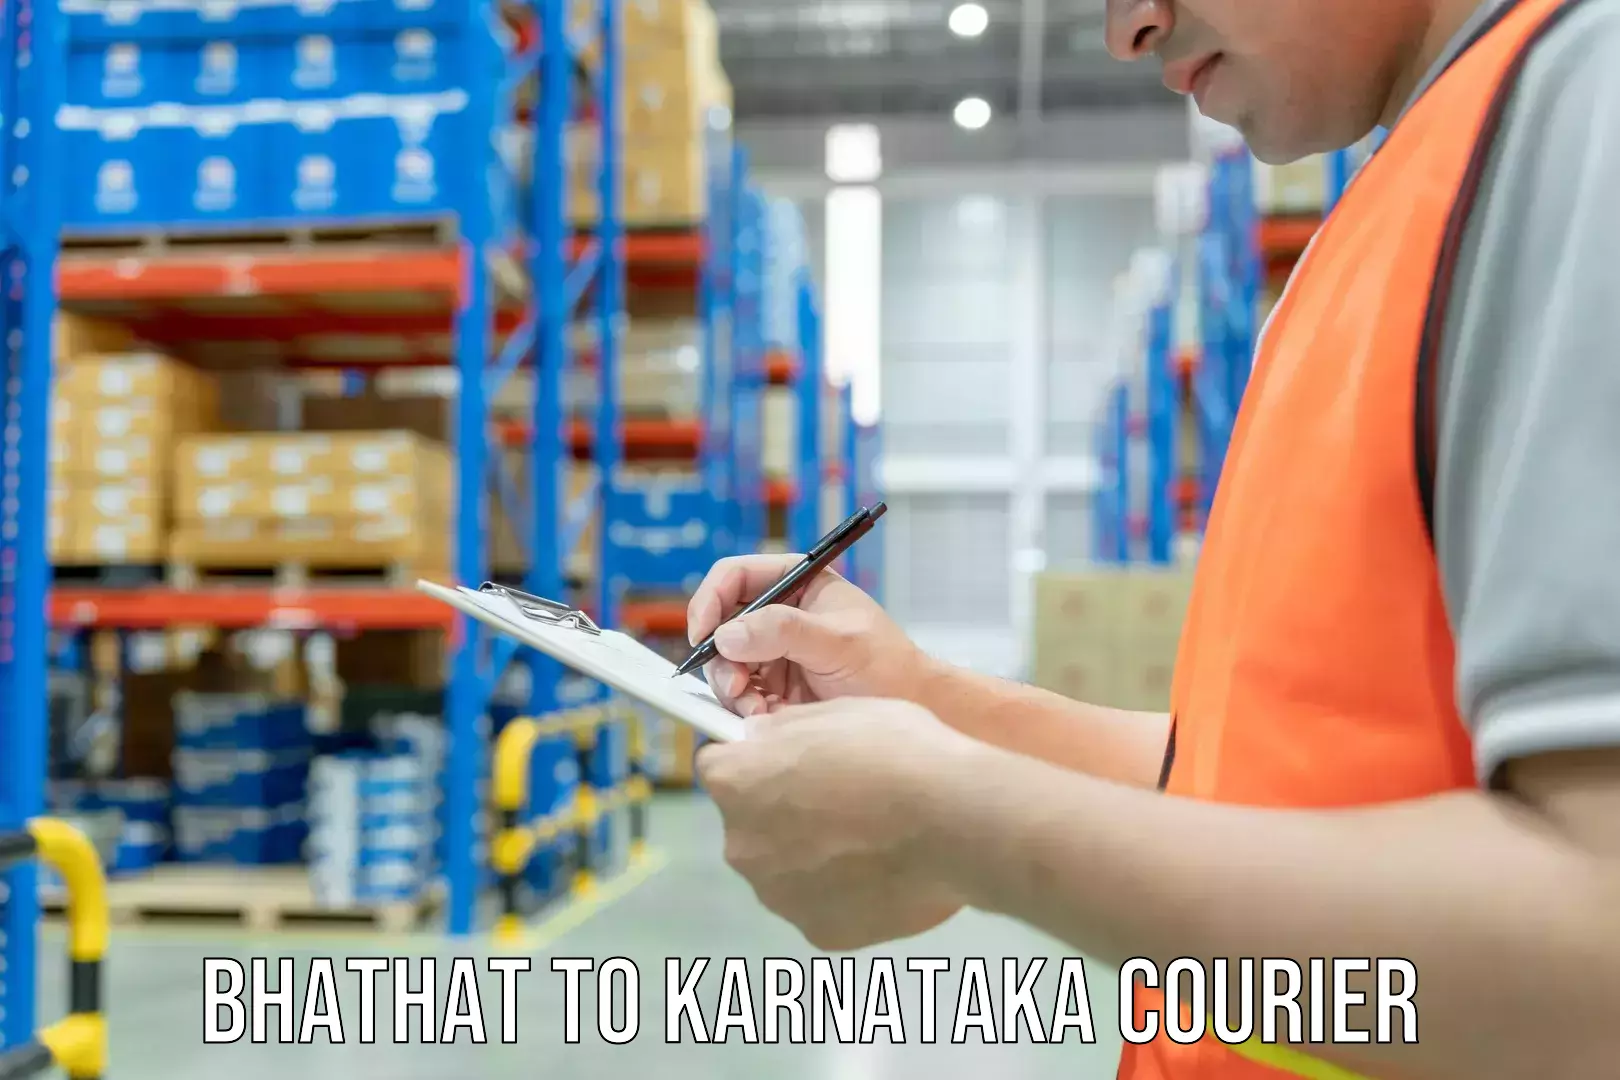 Custom courier strategies Bhathat to Karnataka